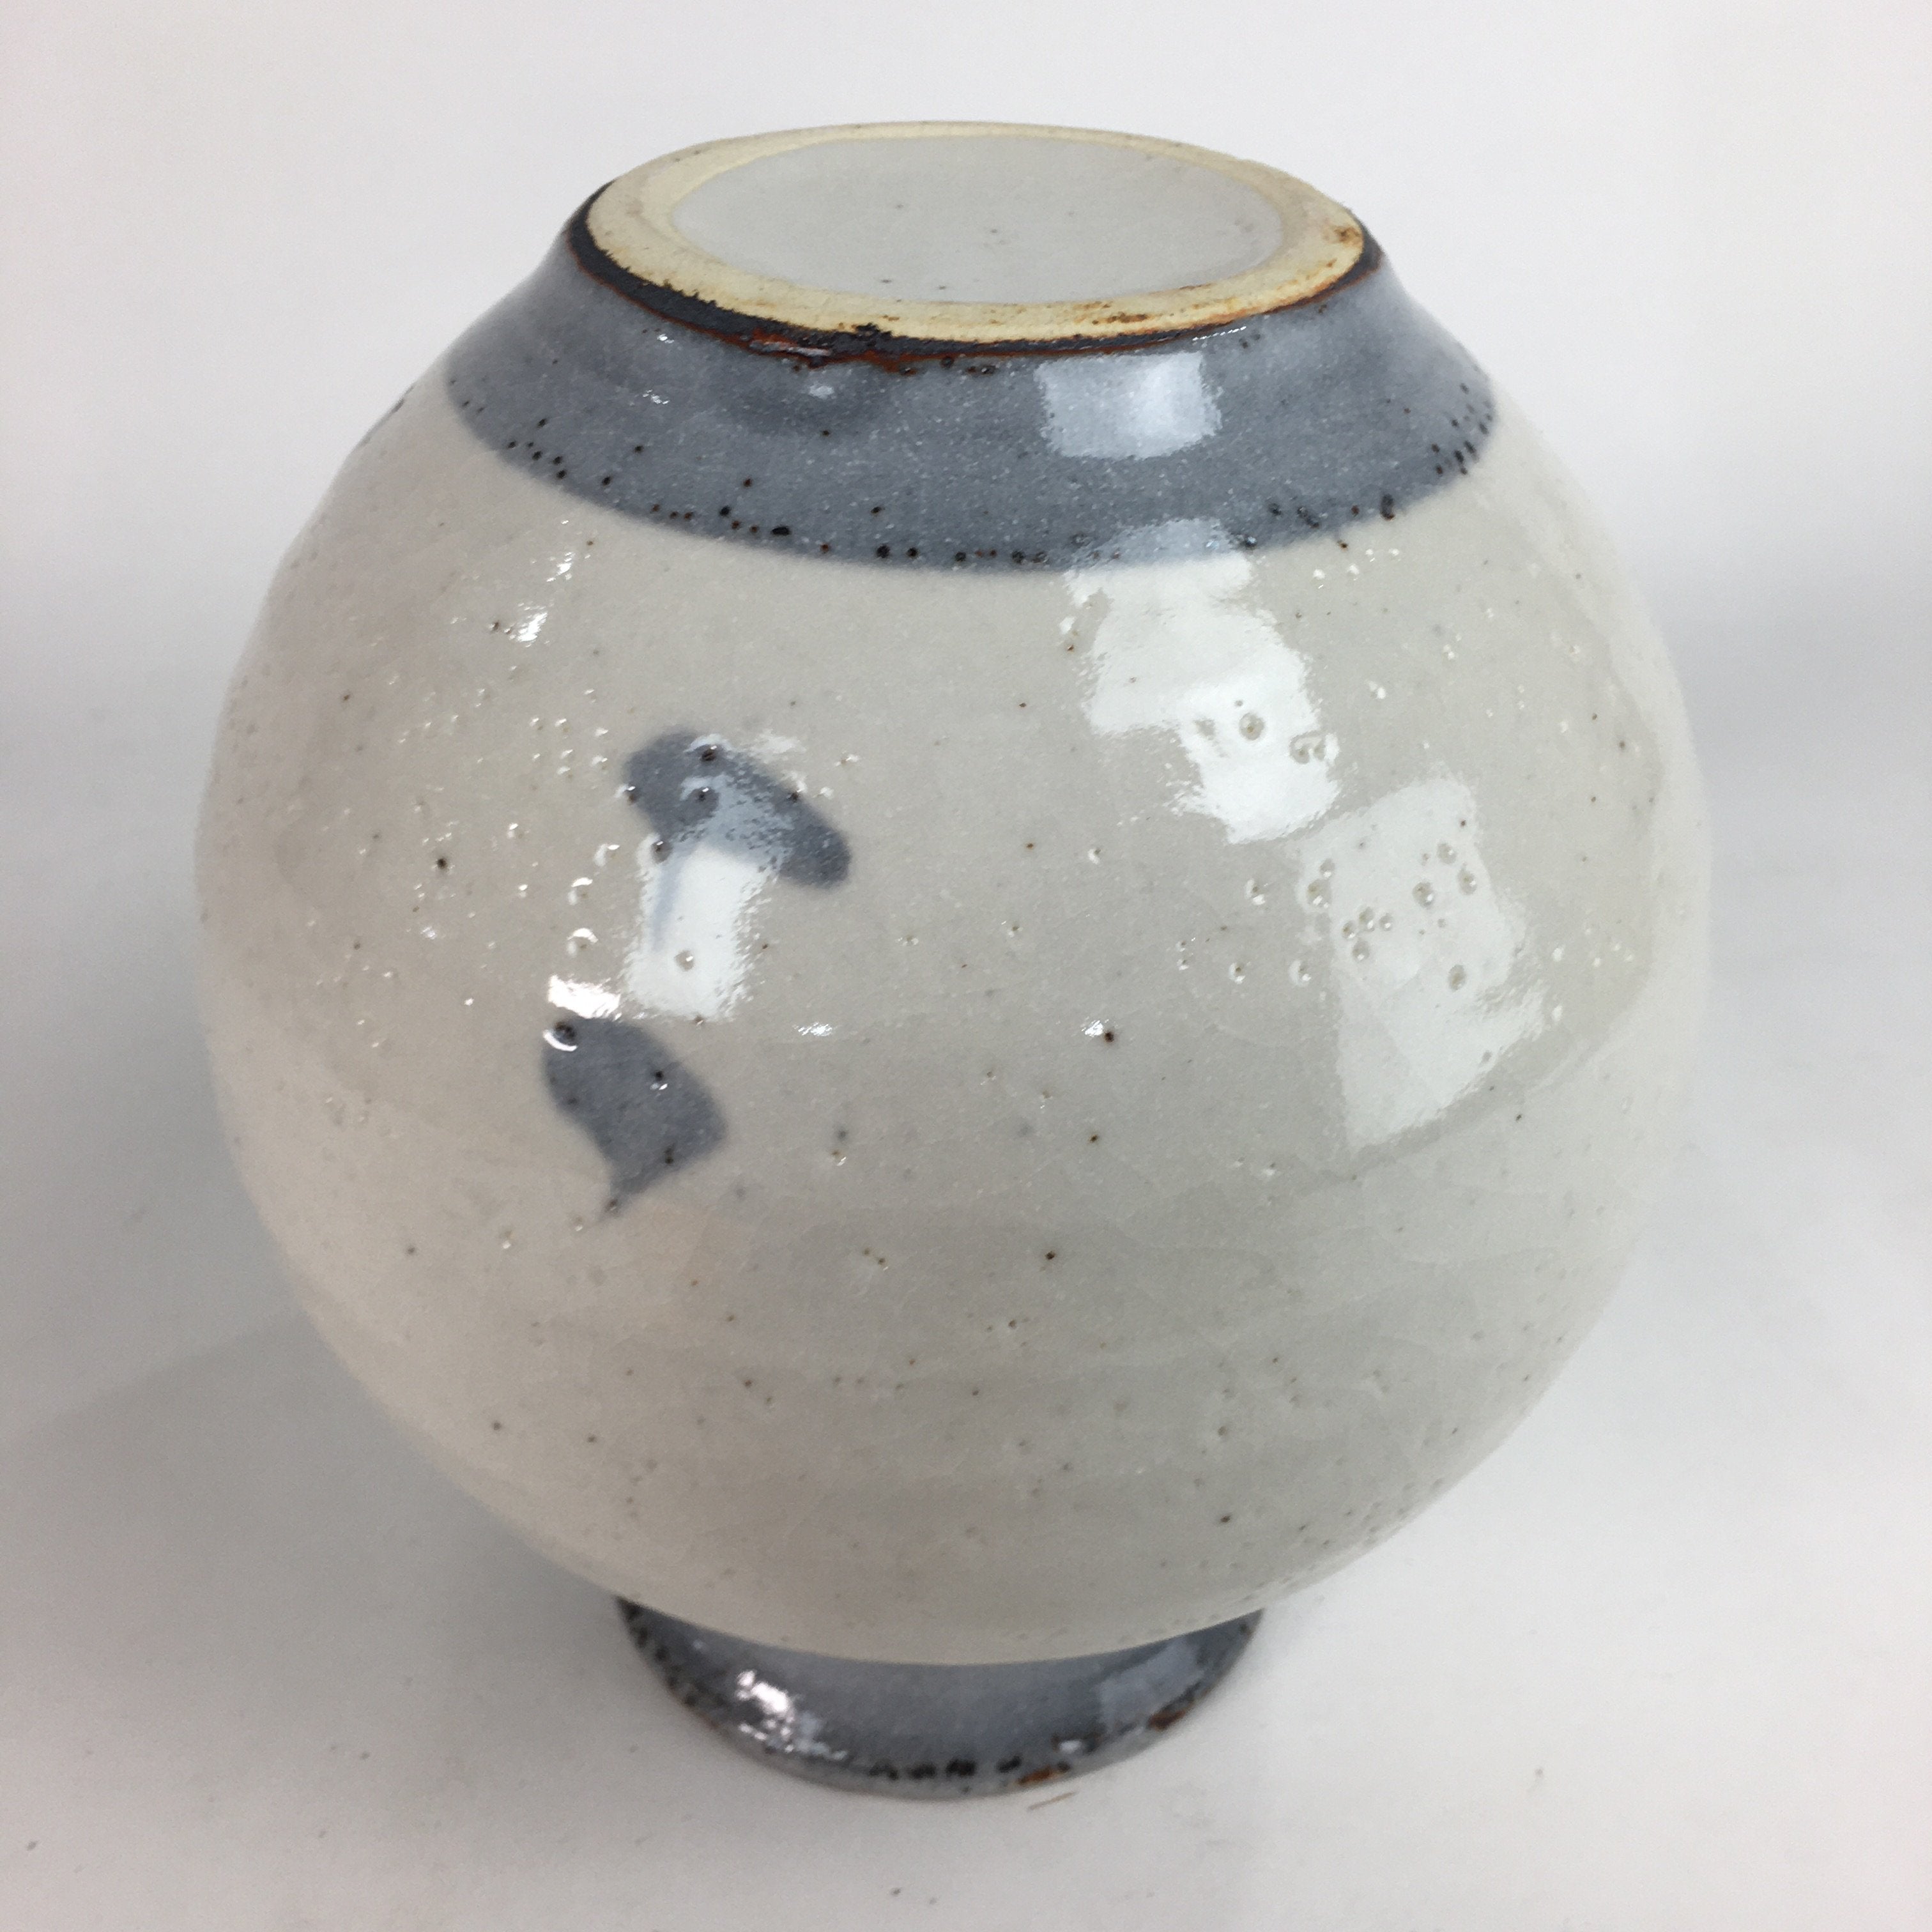 Japanese Ceramic Flower Vase Kabin Mino ware Vtg Pottery White Ikebana FV921